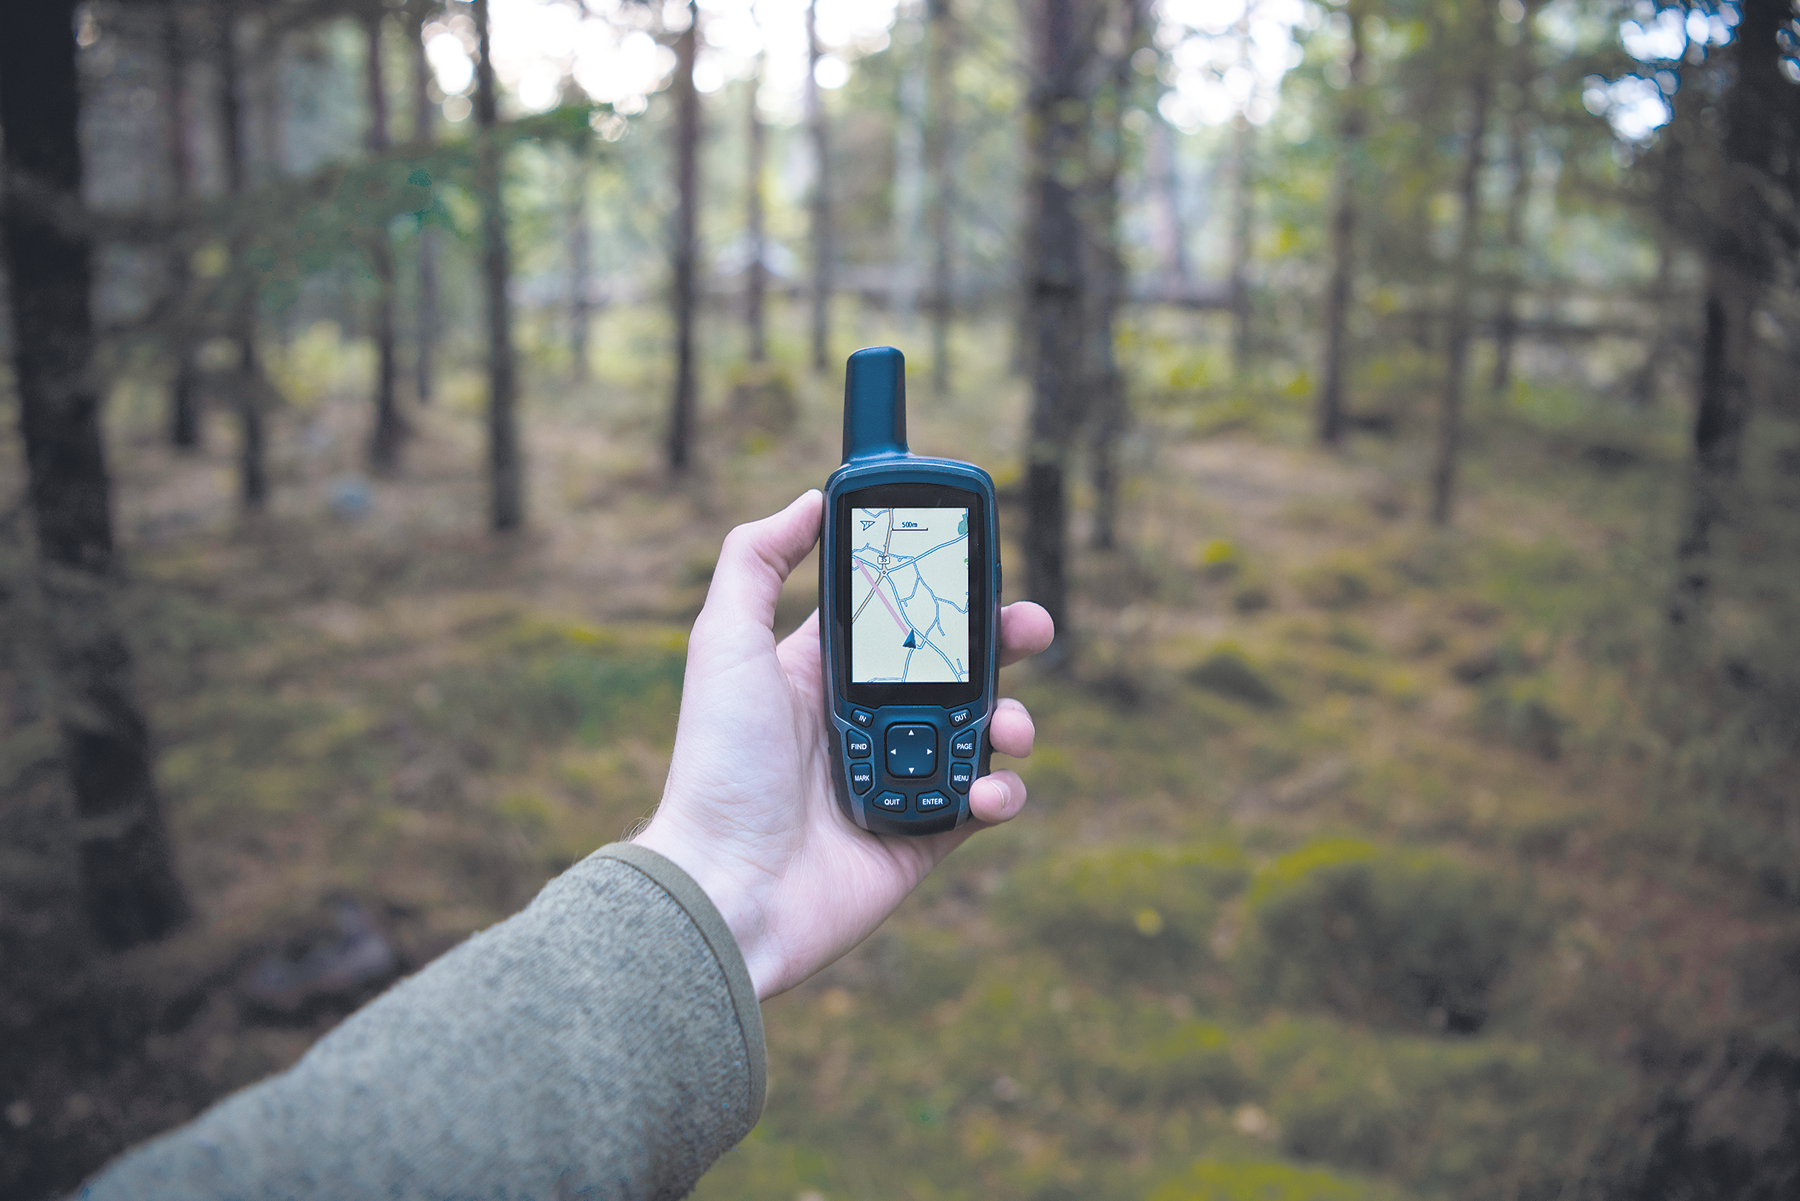 Fotografia. Destaque para uma pessoa segurando um aparelho GPS mostrando vias. Ao fundo, uma floresta.